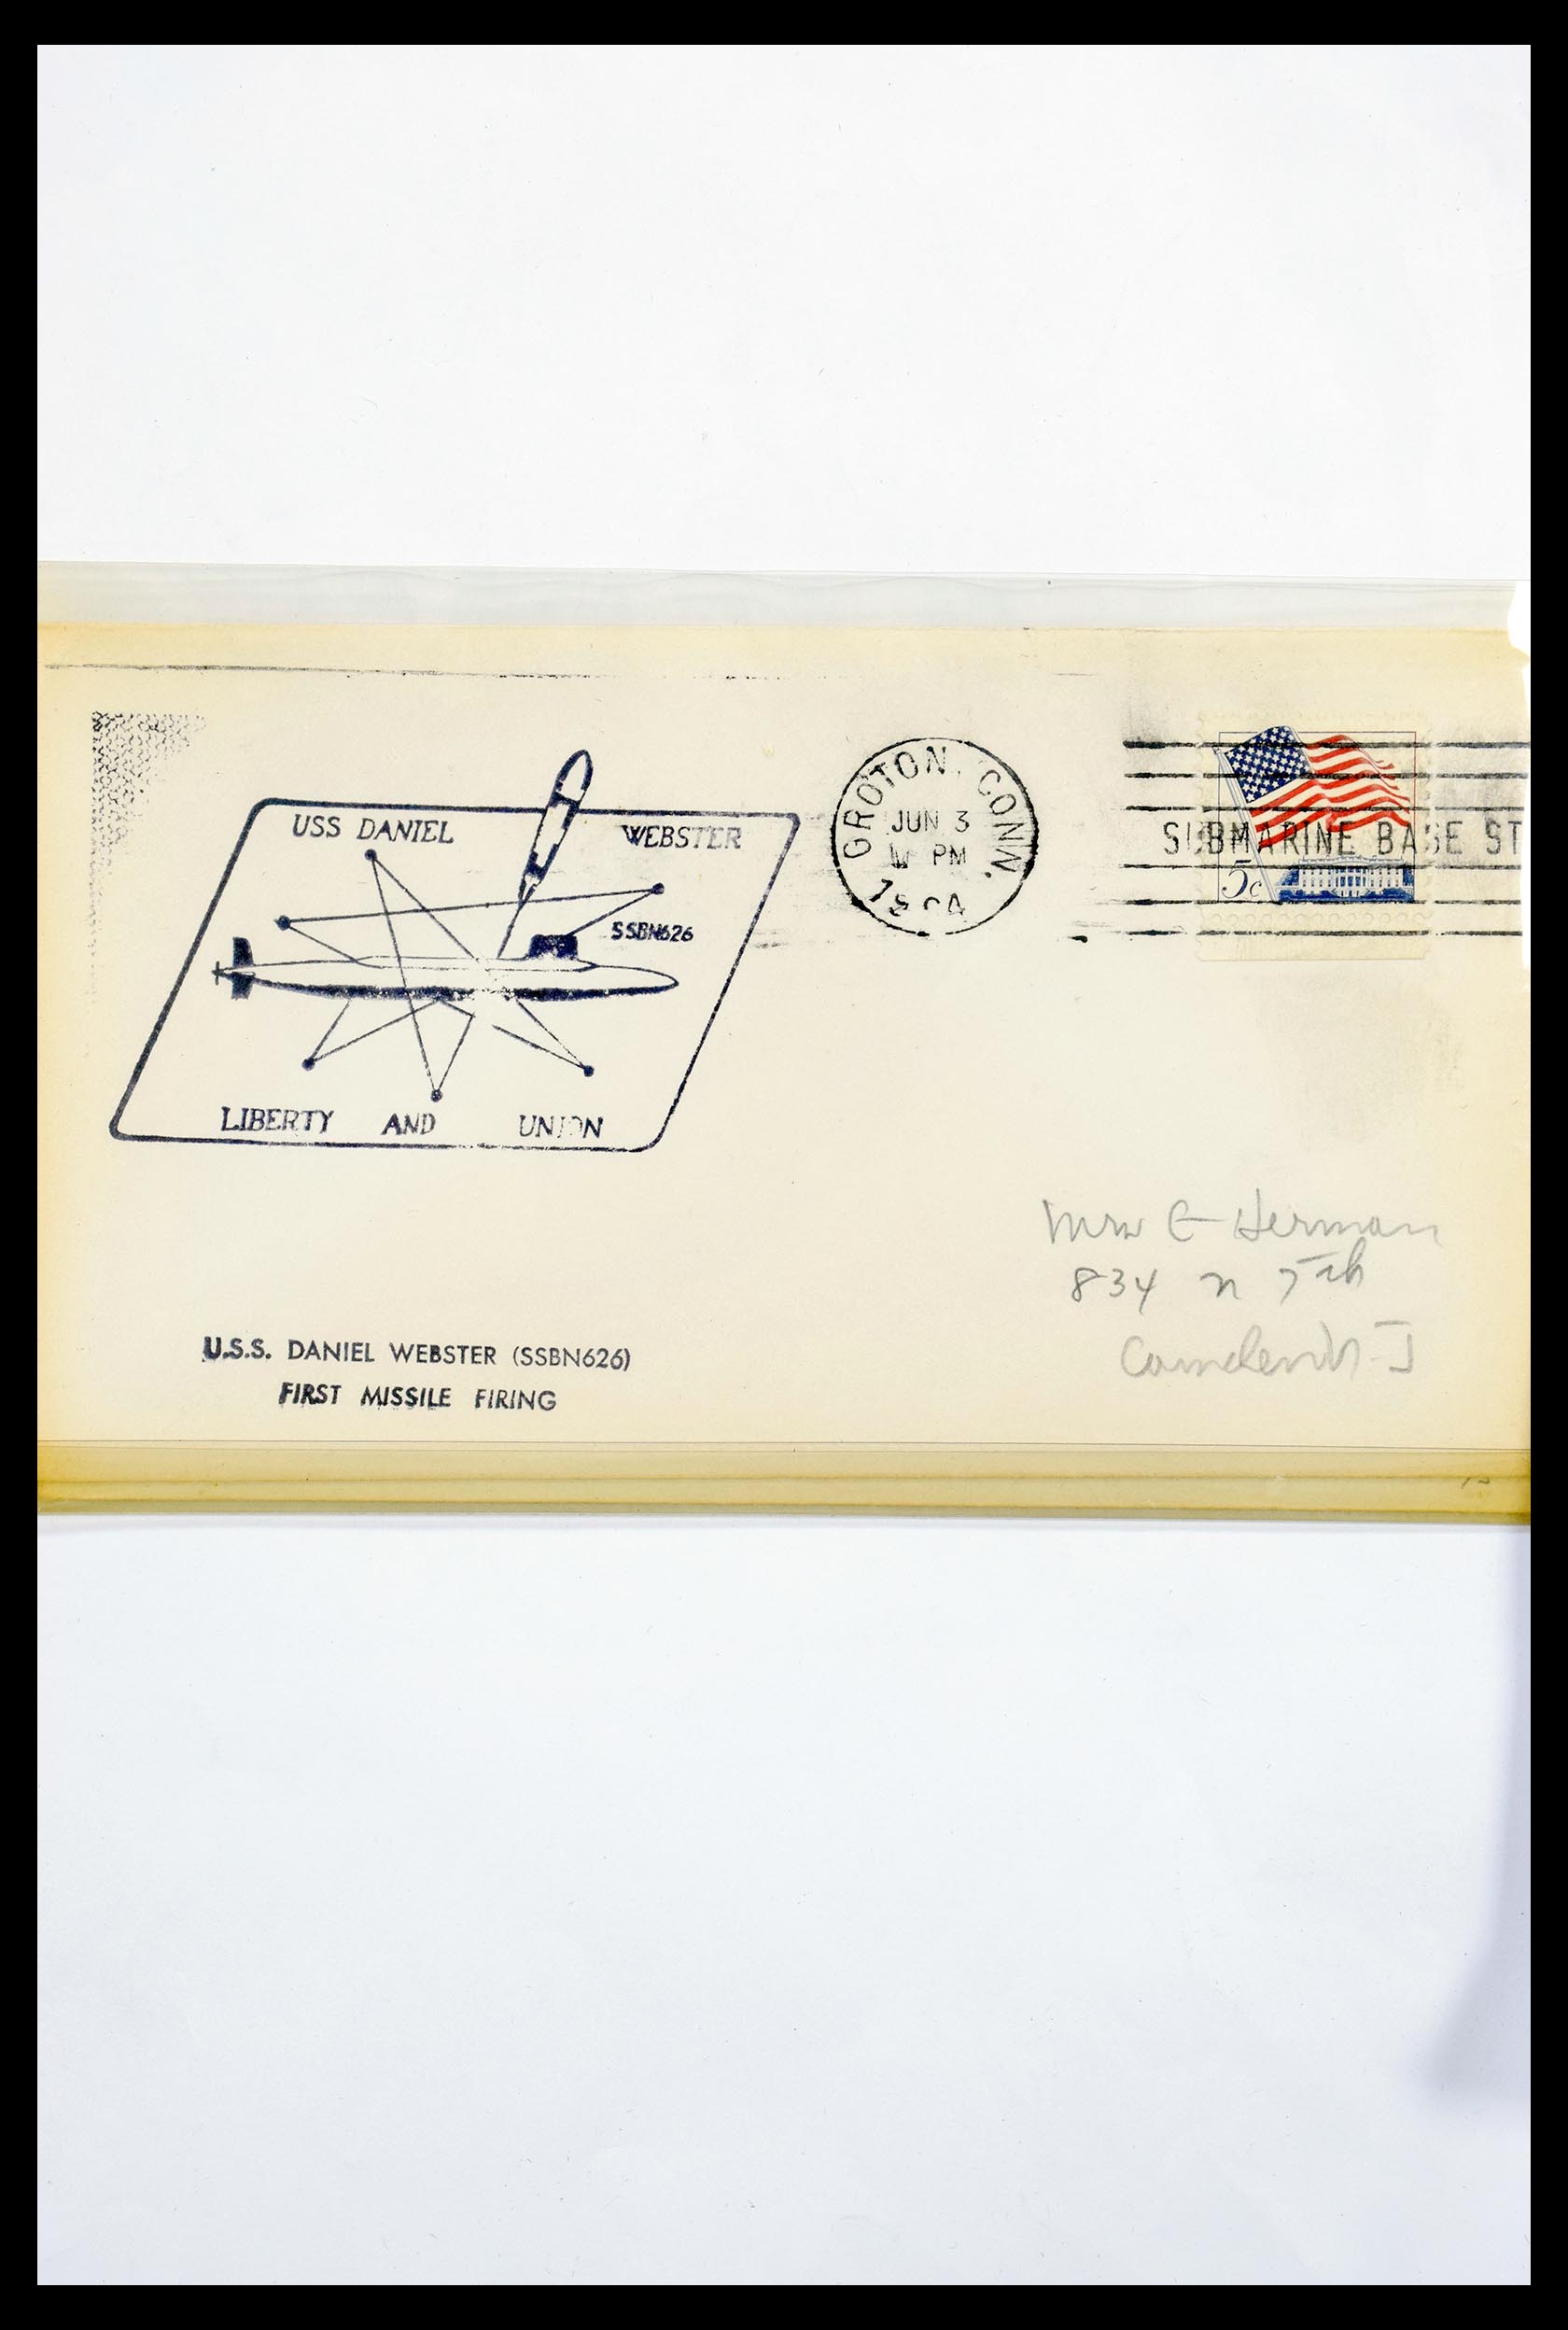 30341 325 - 30341 USA scheepspost brieven 1930-1970.